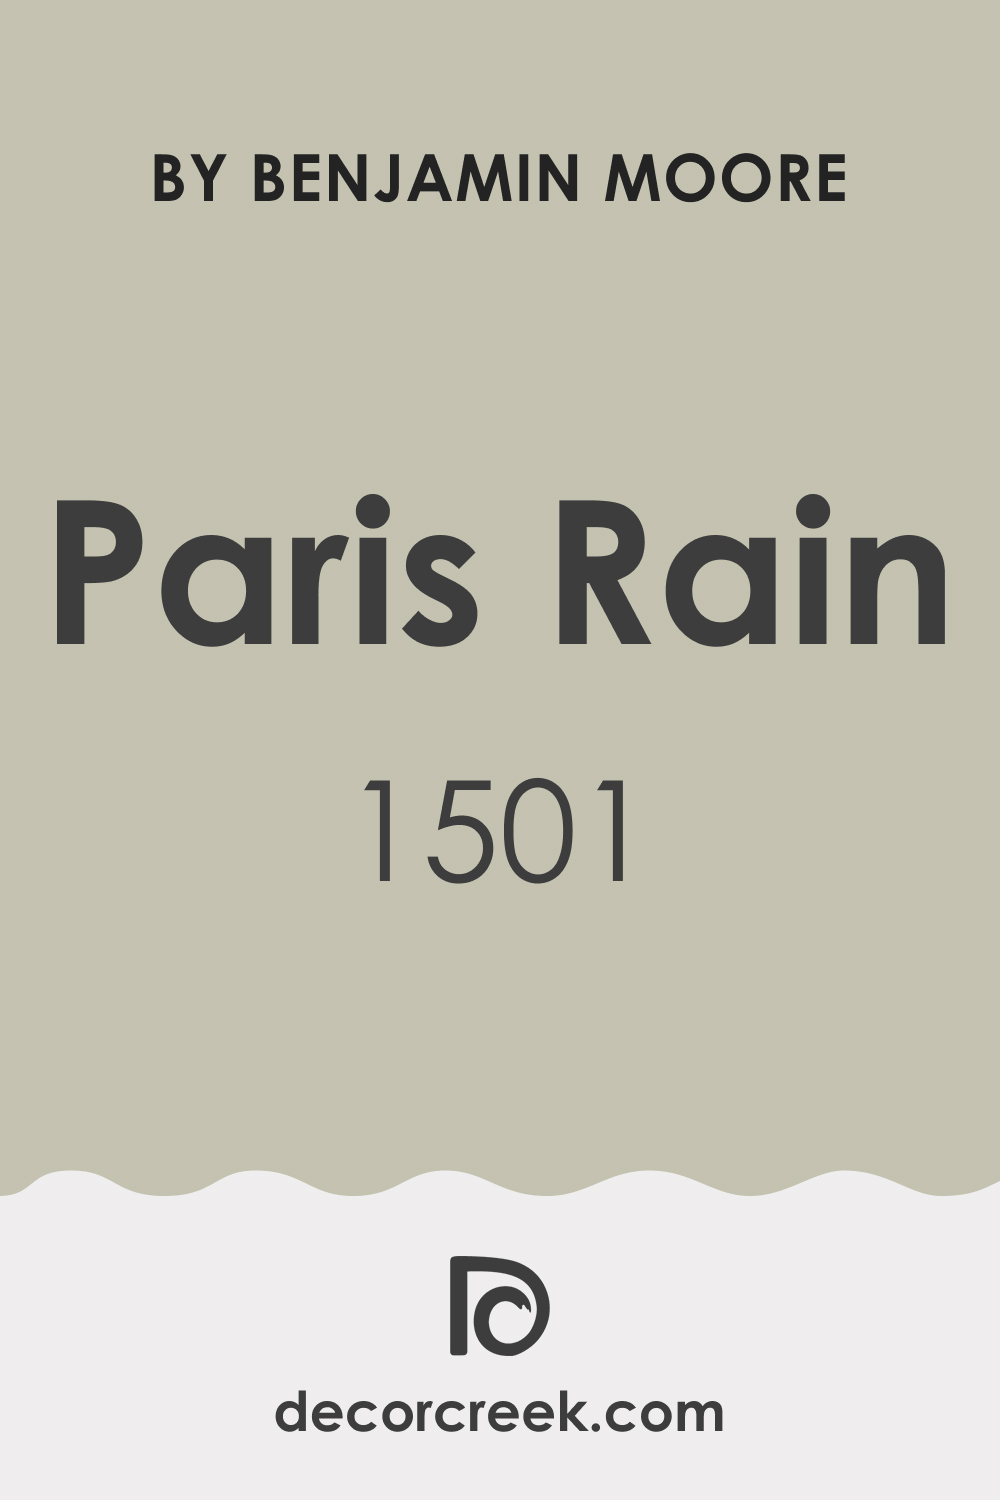 What Color Is Paris Rain 1501?